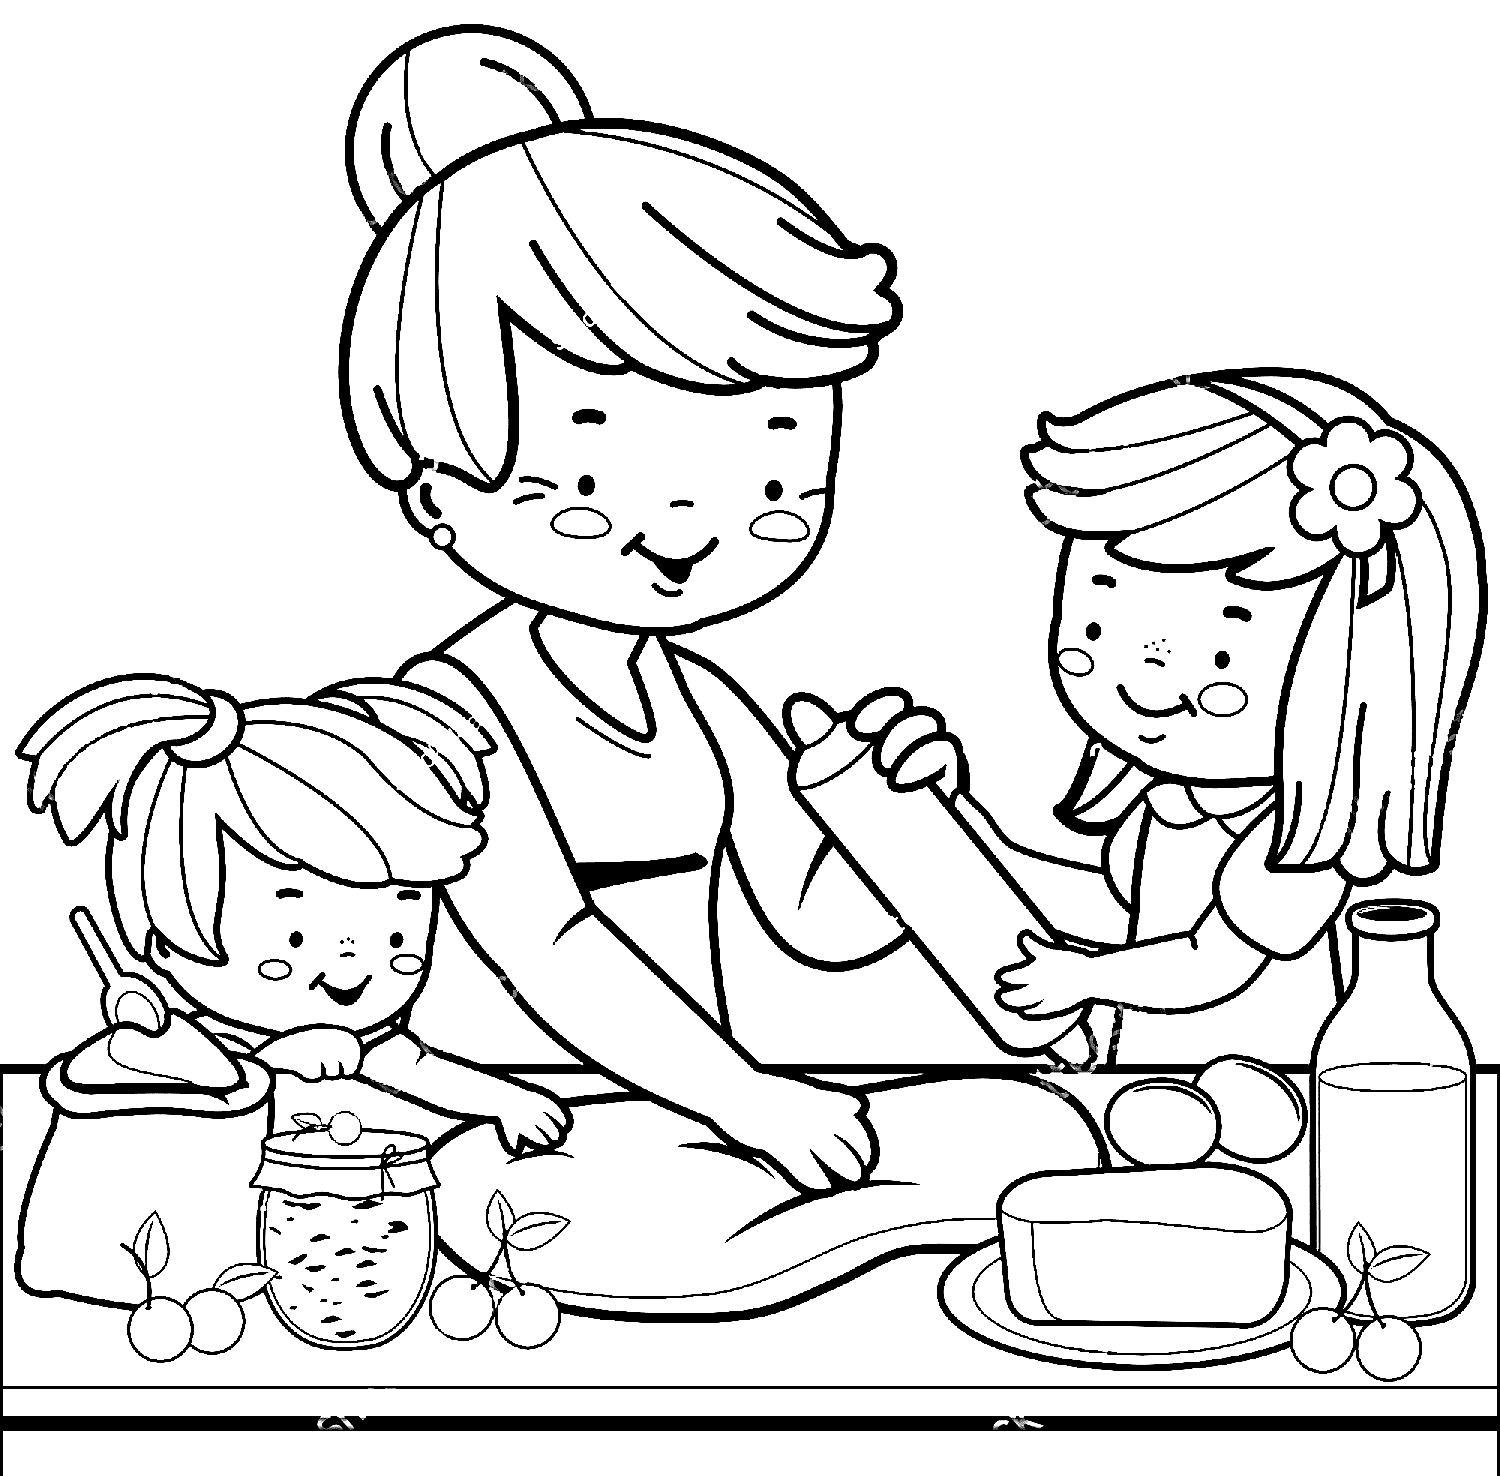 Grand-mère et enfants préparent des gâteaux en famille